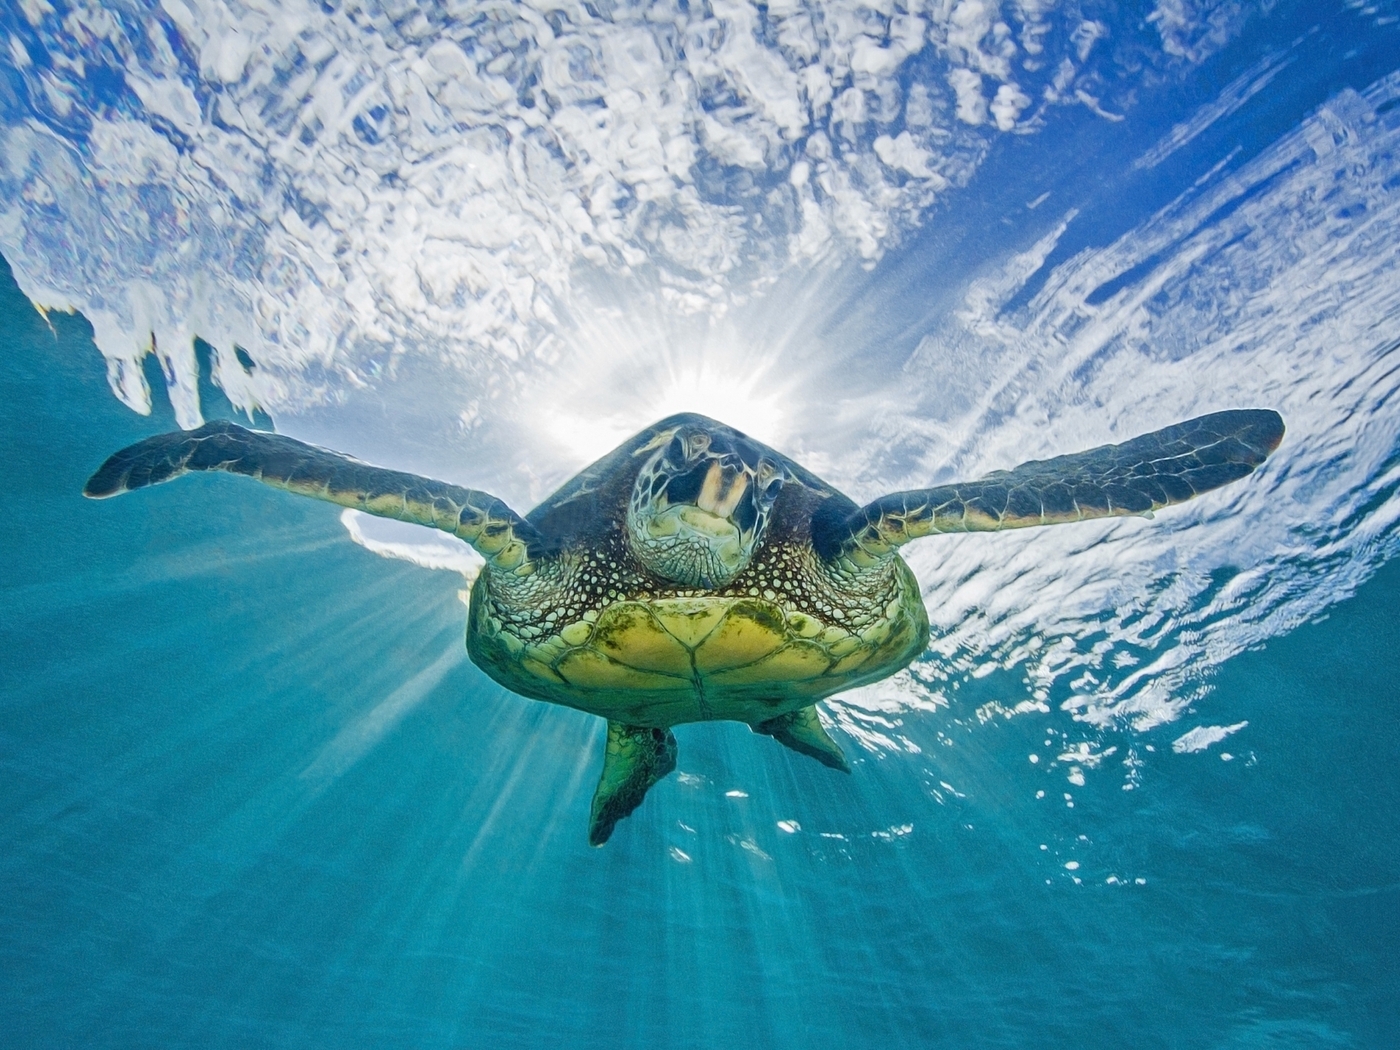 Image: Turtle, floating, light, surface, ocean, sky, underwater